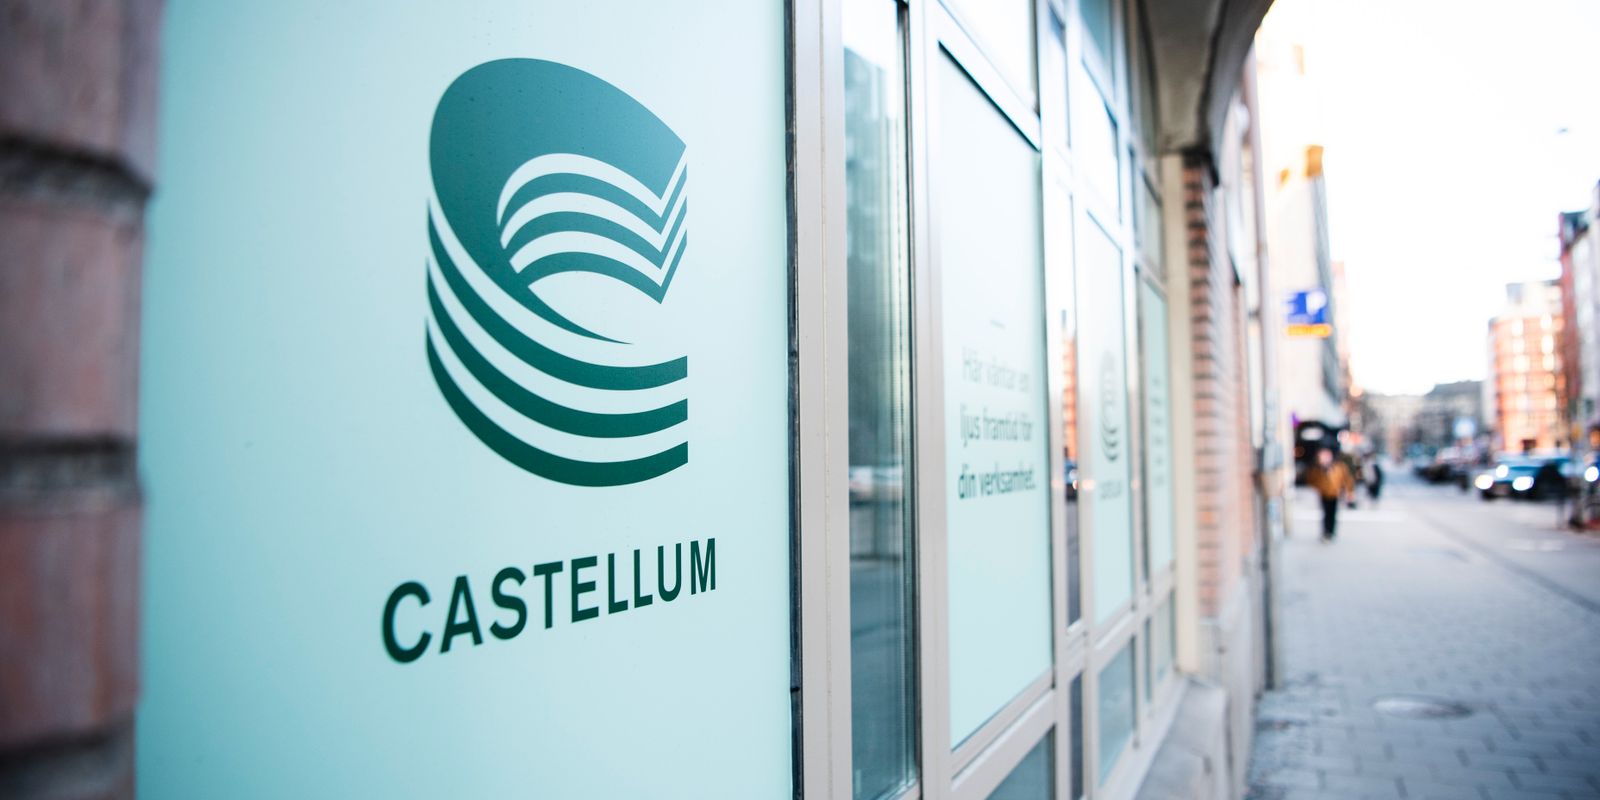 castellum ökade intäkterna: ”svagare efterfrågan”